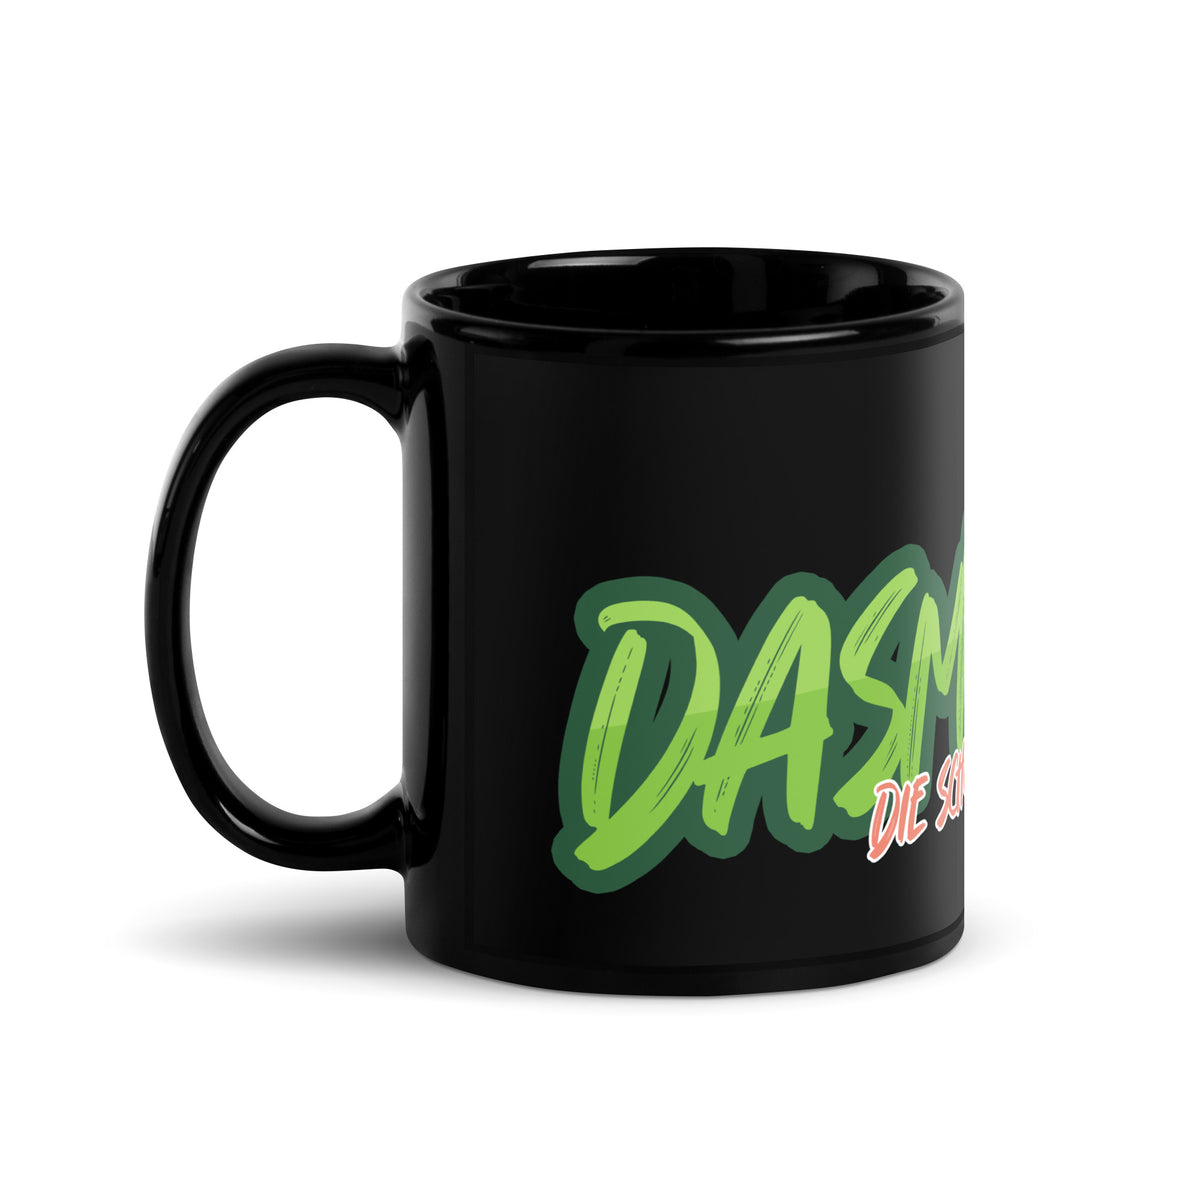 DasMelohxD - Schwarze glänzende Tasse